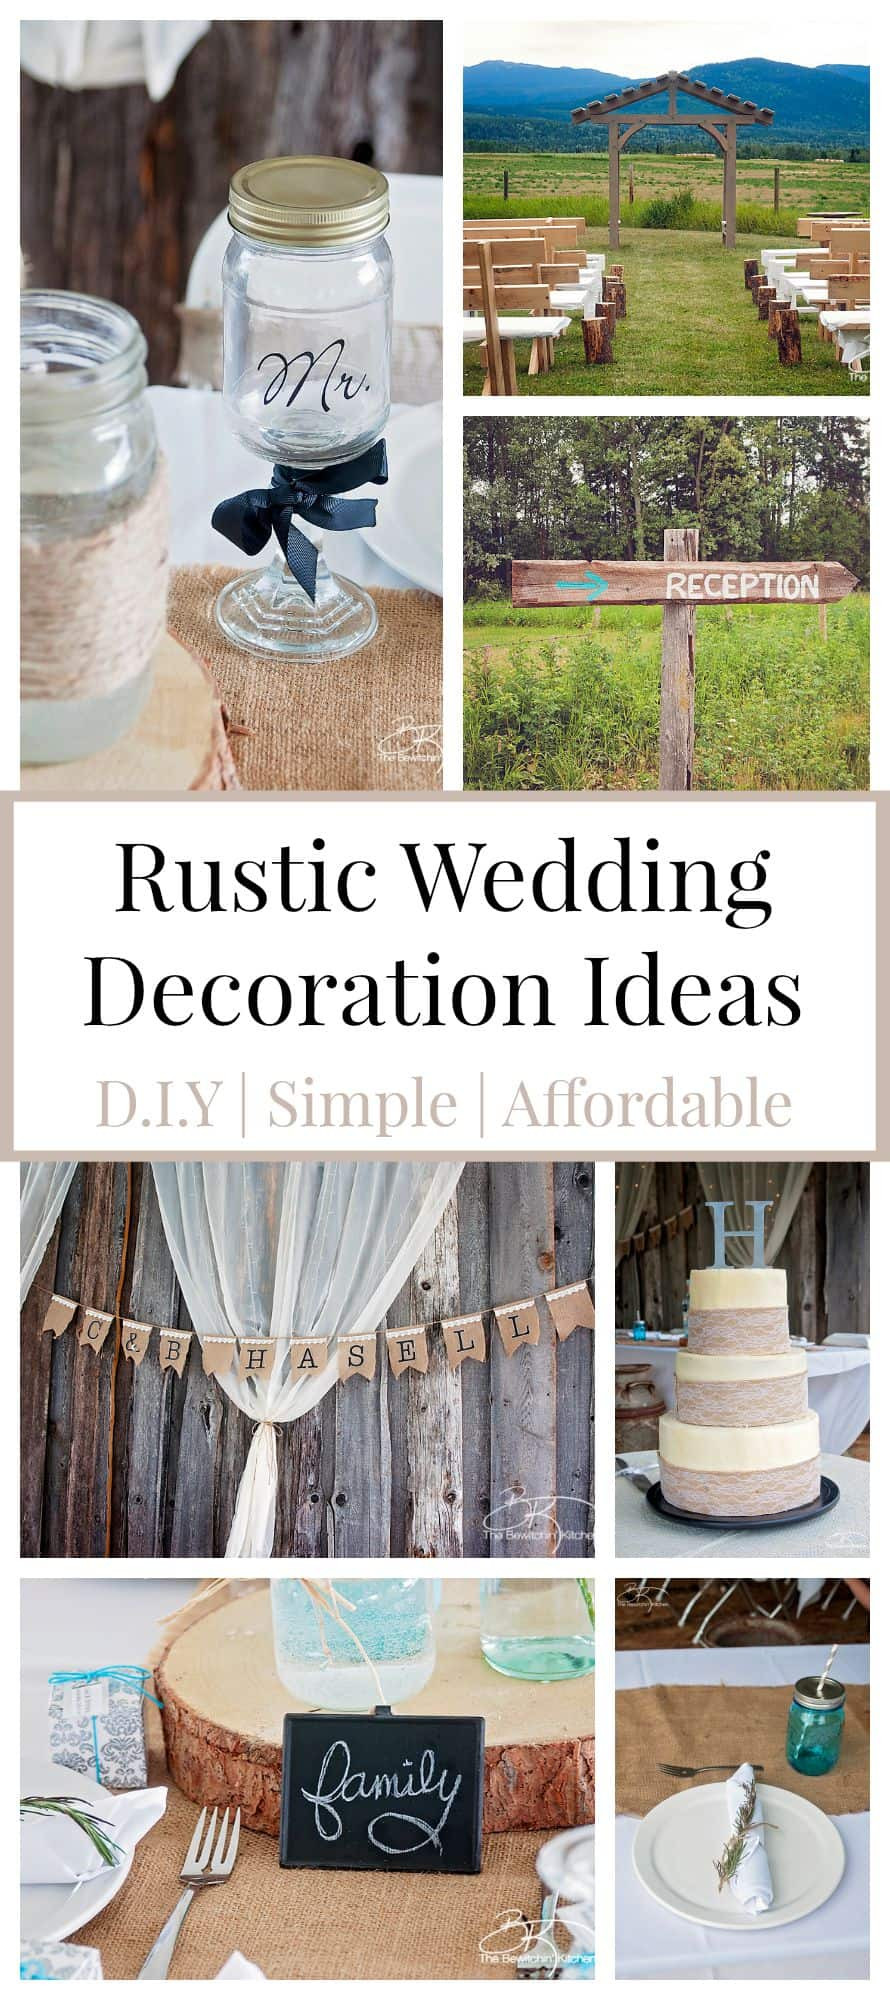 Wedding DIY Decorations
 Rustic Wedding Ideas That Are DIY & Affordable